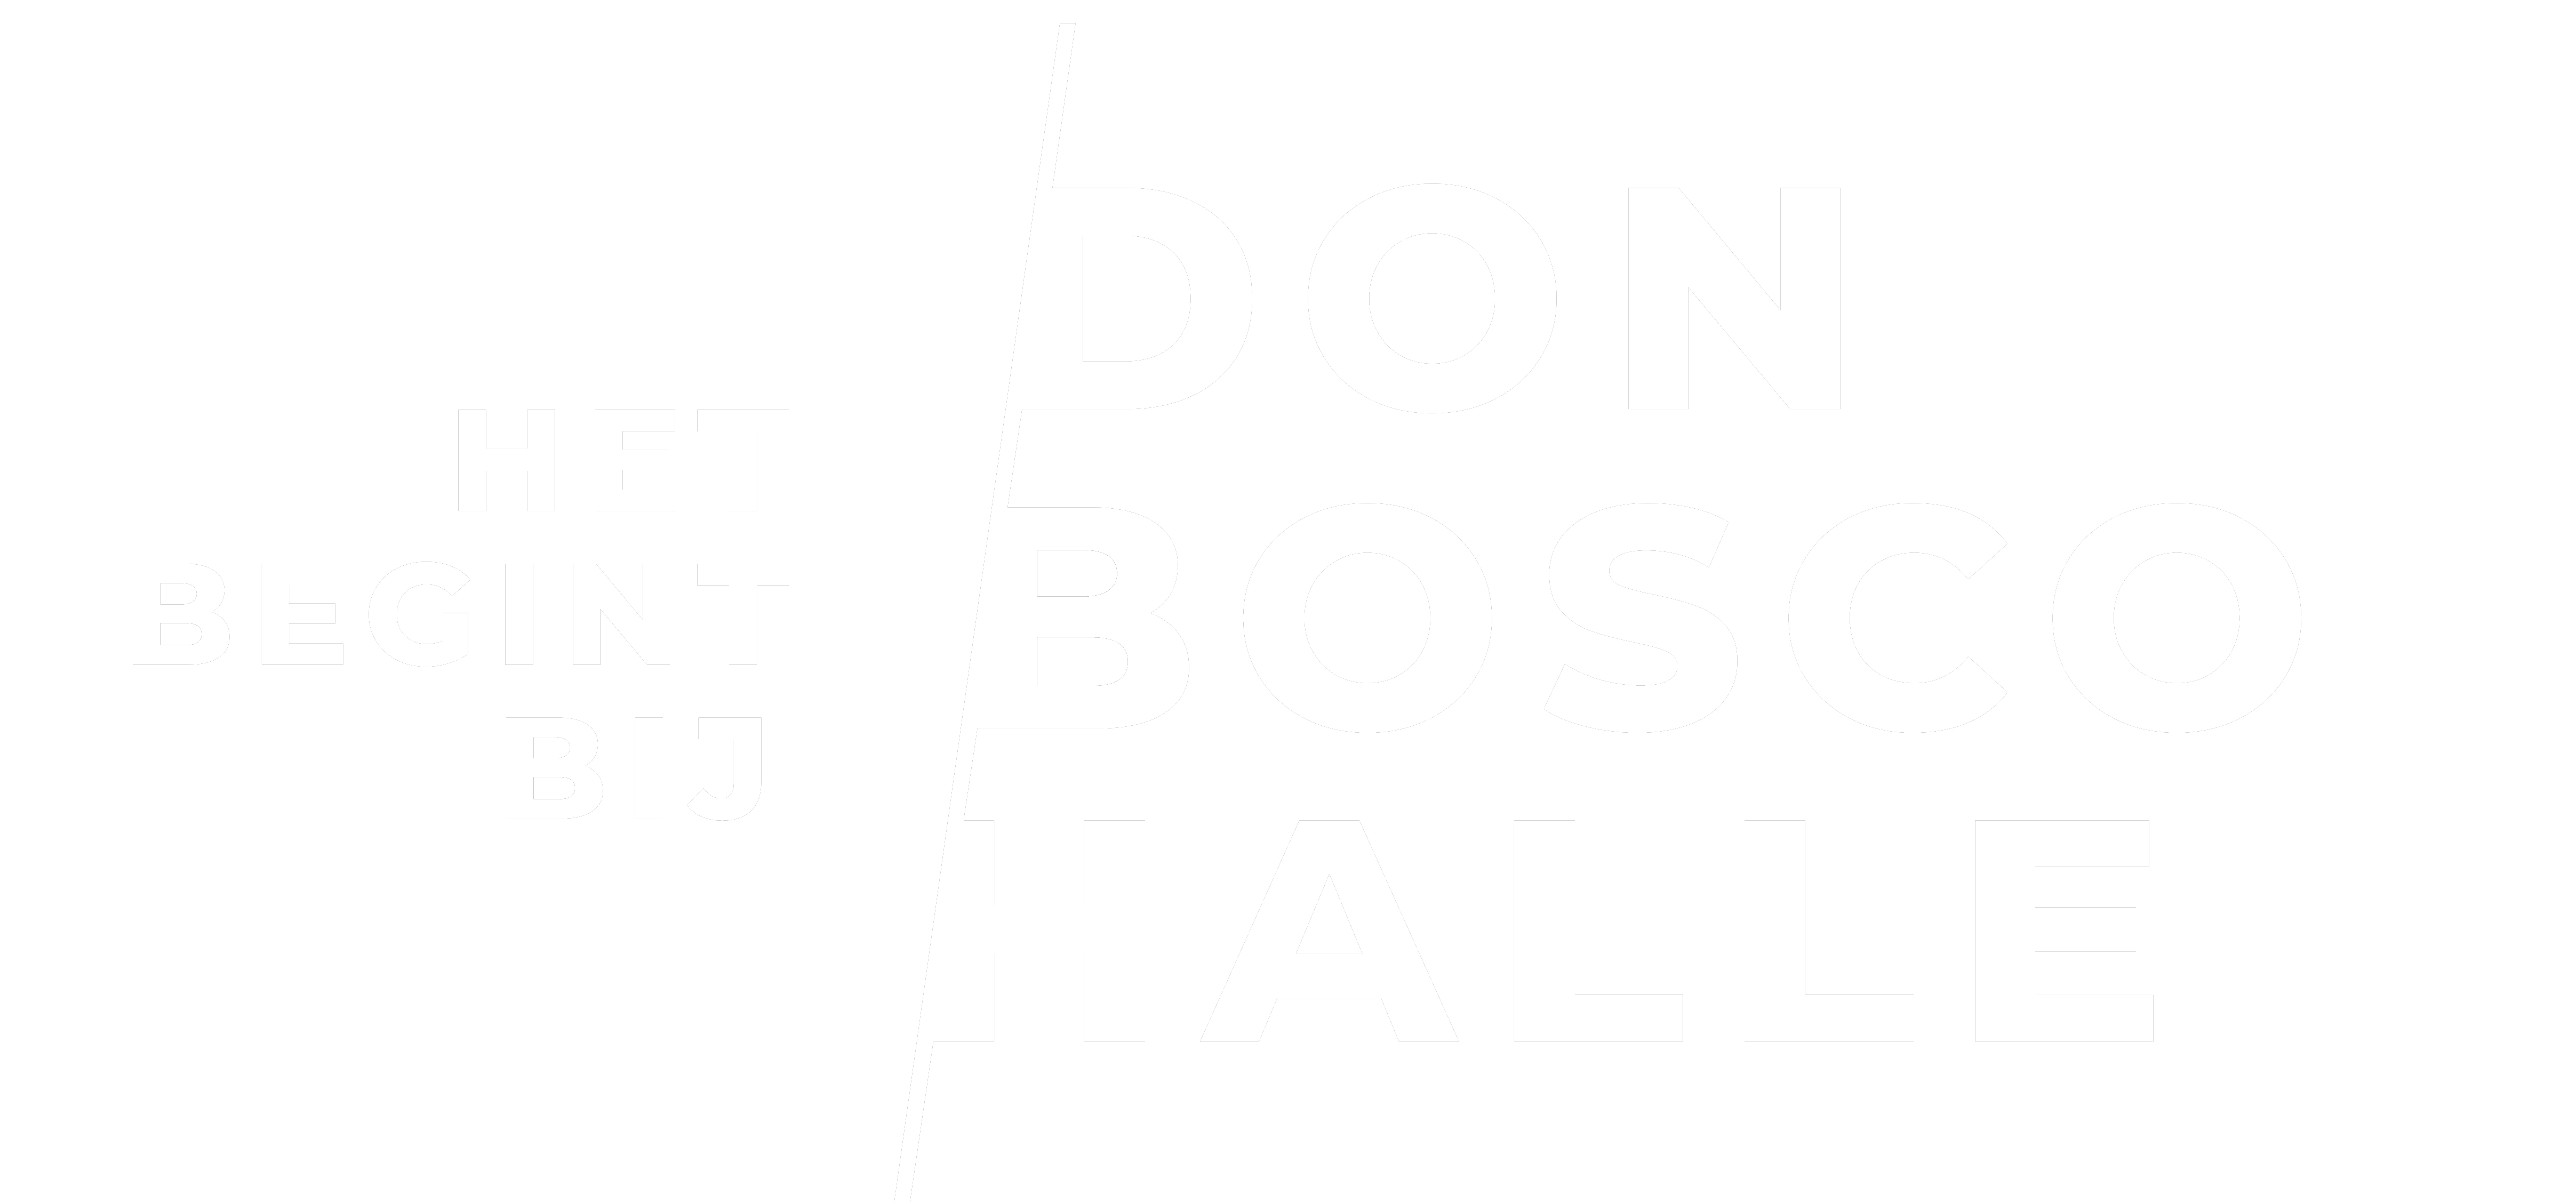 T.I. Don Bosco Halle